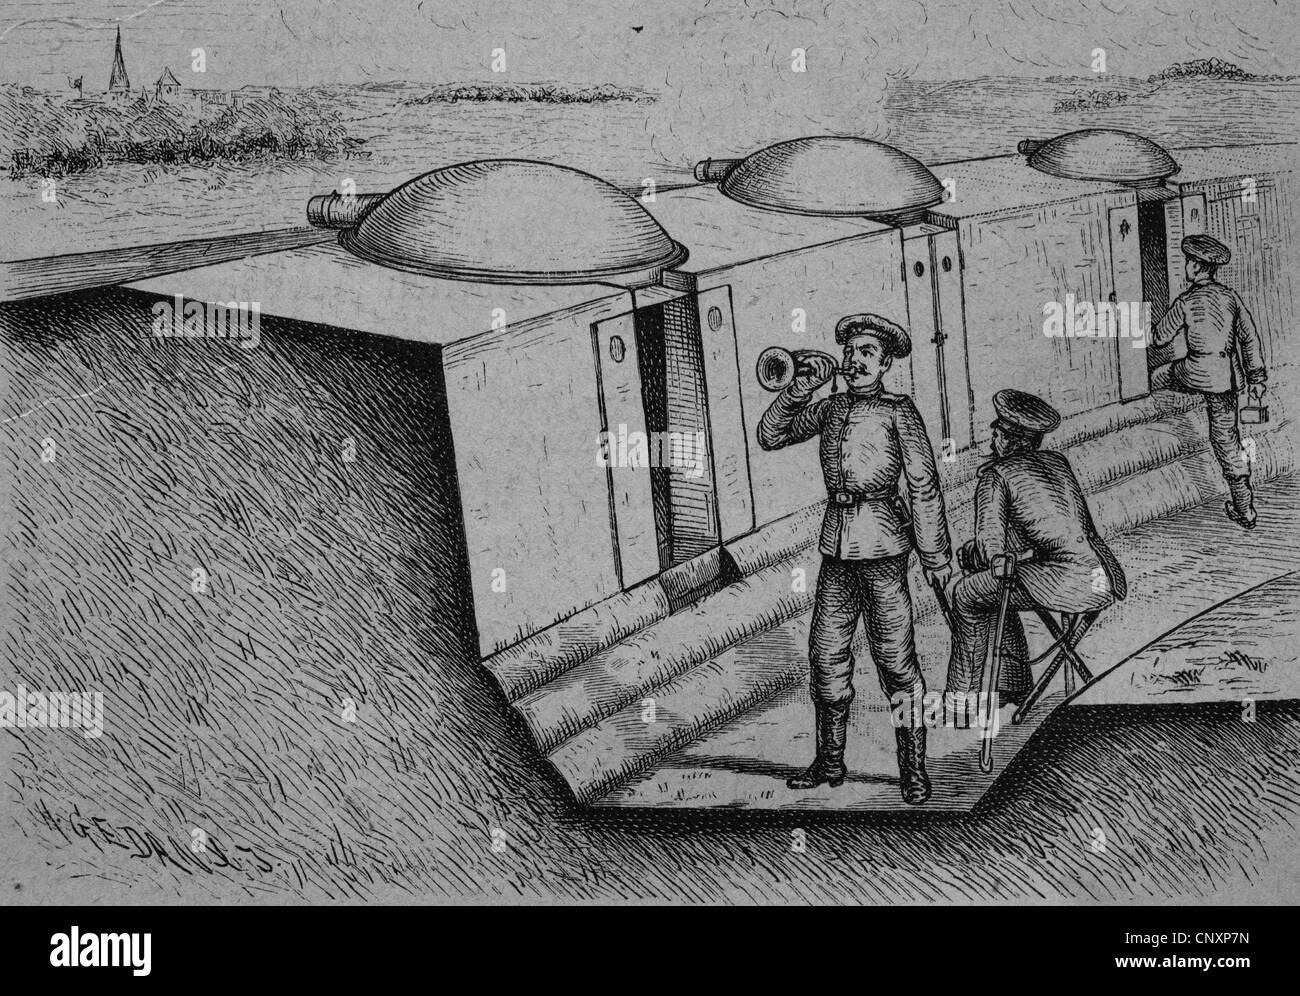 Tranchées de véhicules blindés, tourelles, gravure historique vers 1885 Banque D'Images